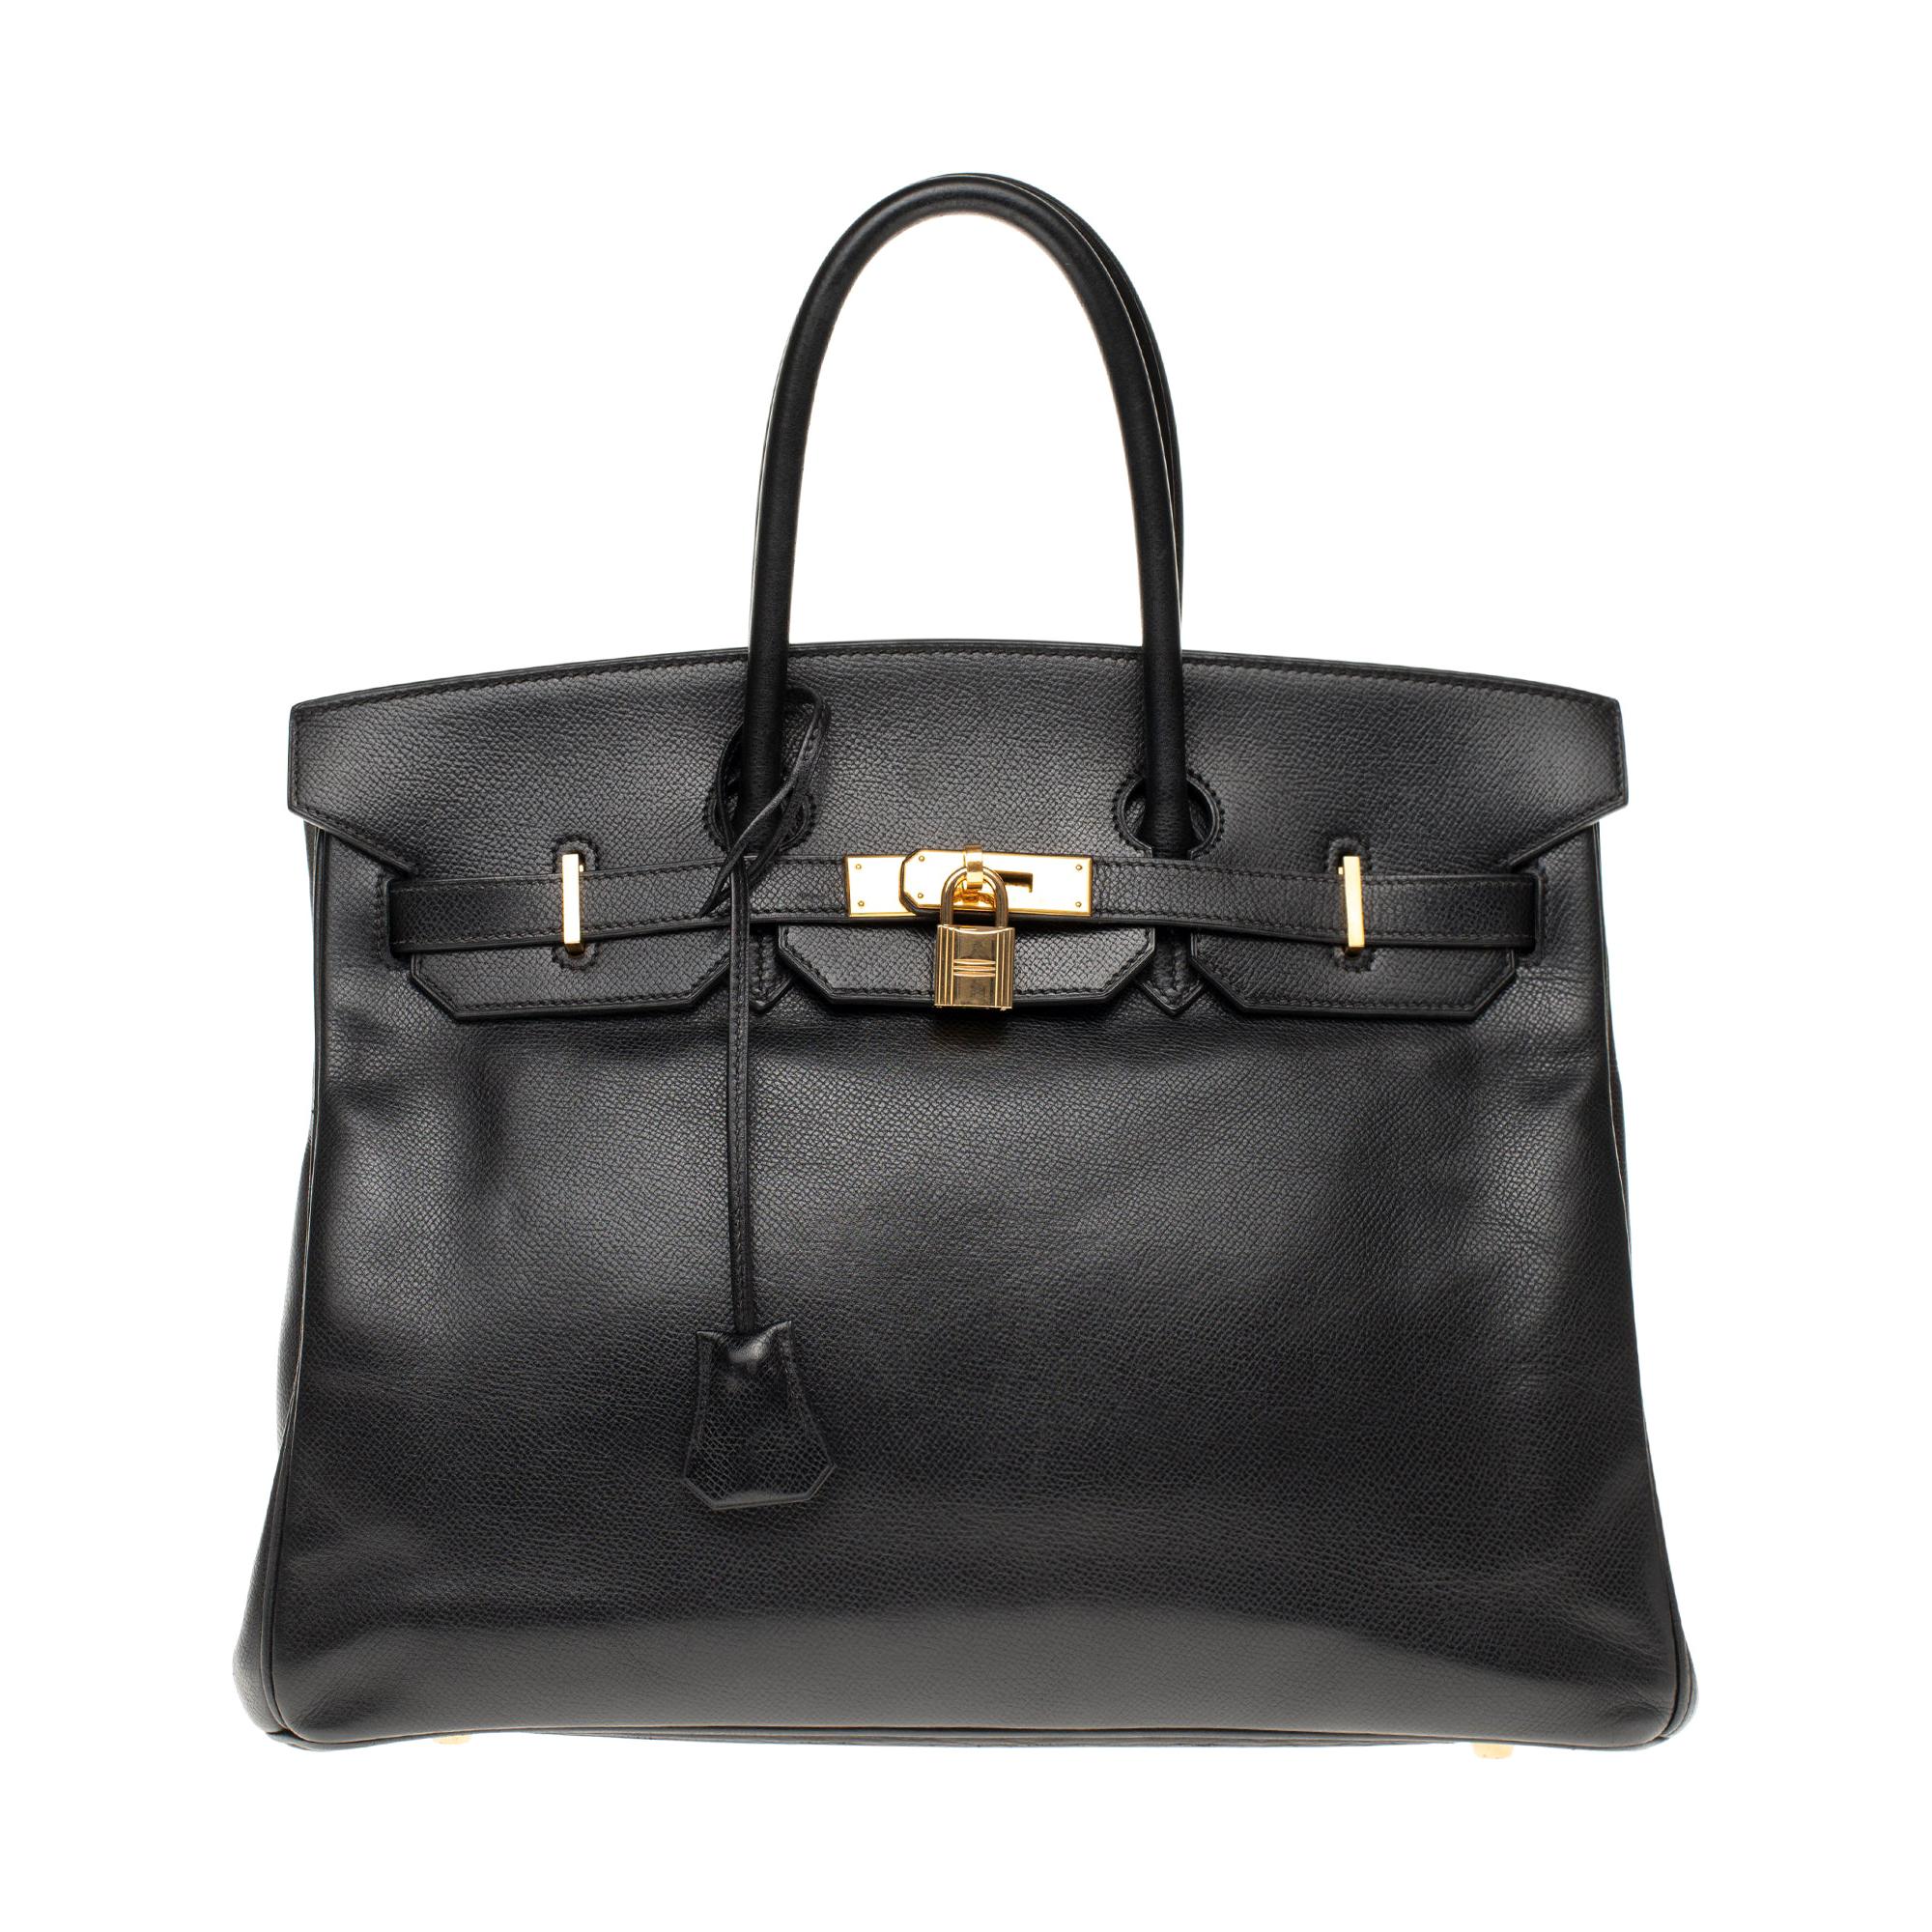 Hermès Birkin 35 handbag in black Courchevel leather, Gold hardware